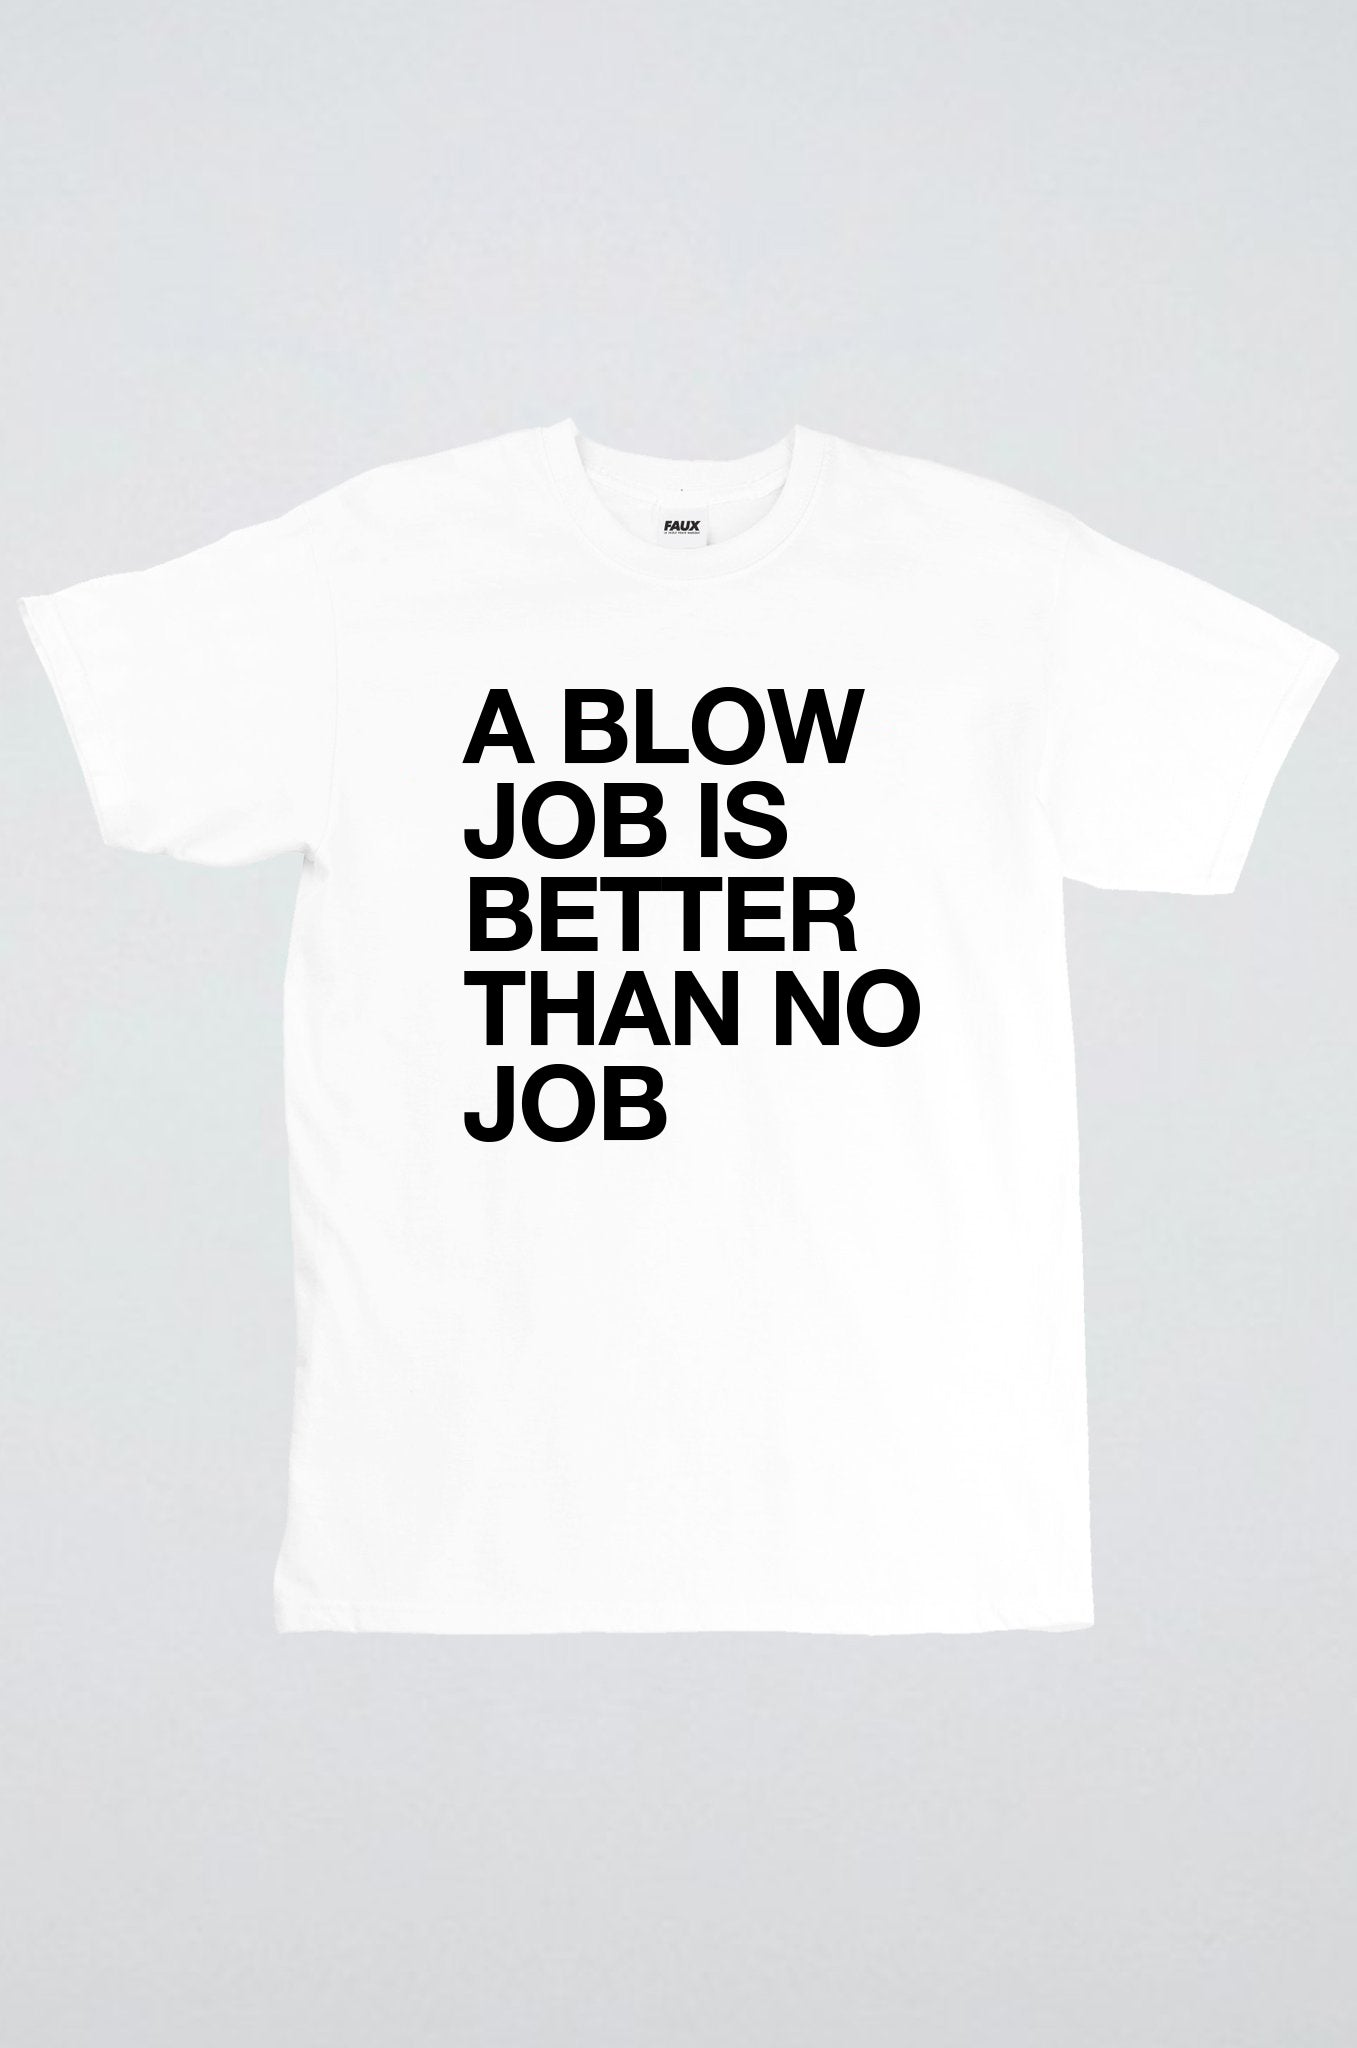 A blow job is better than no job